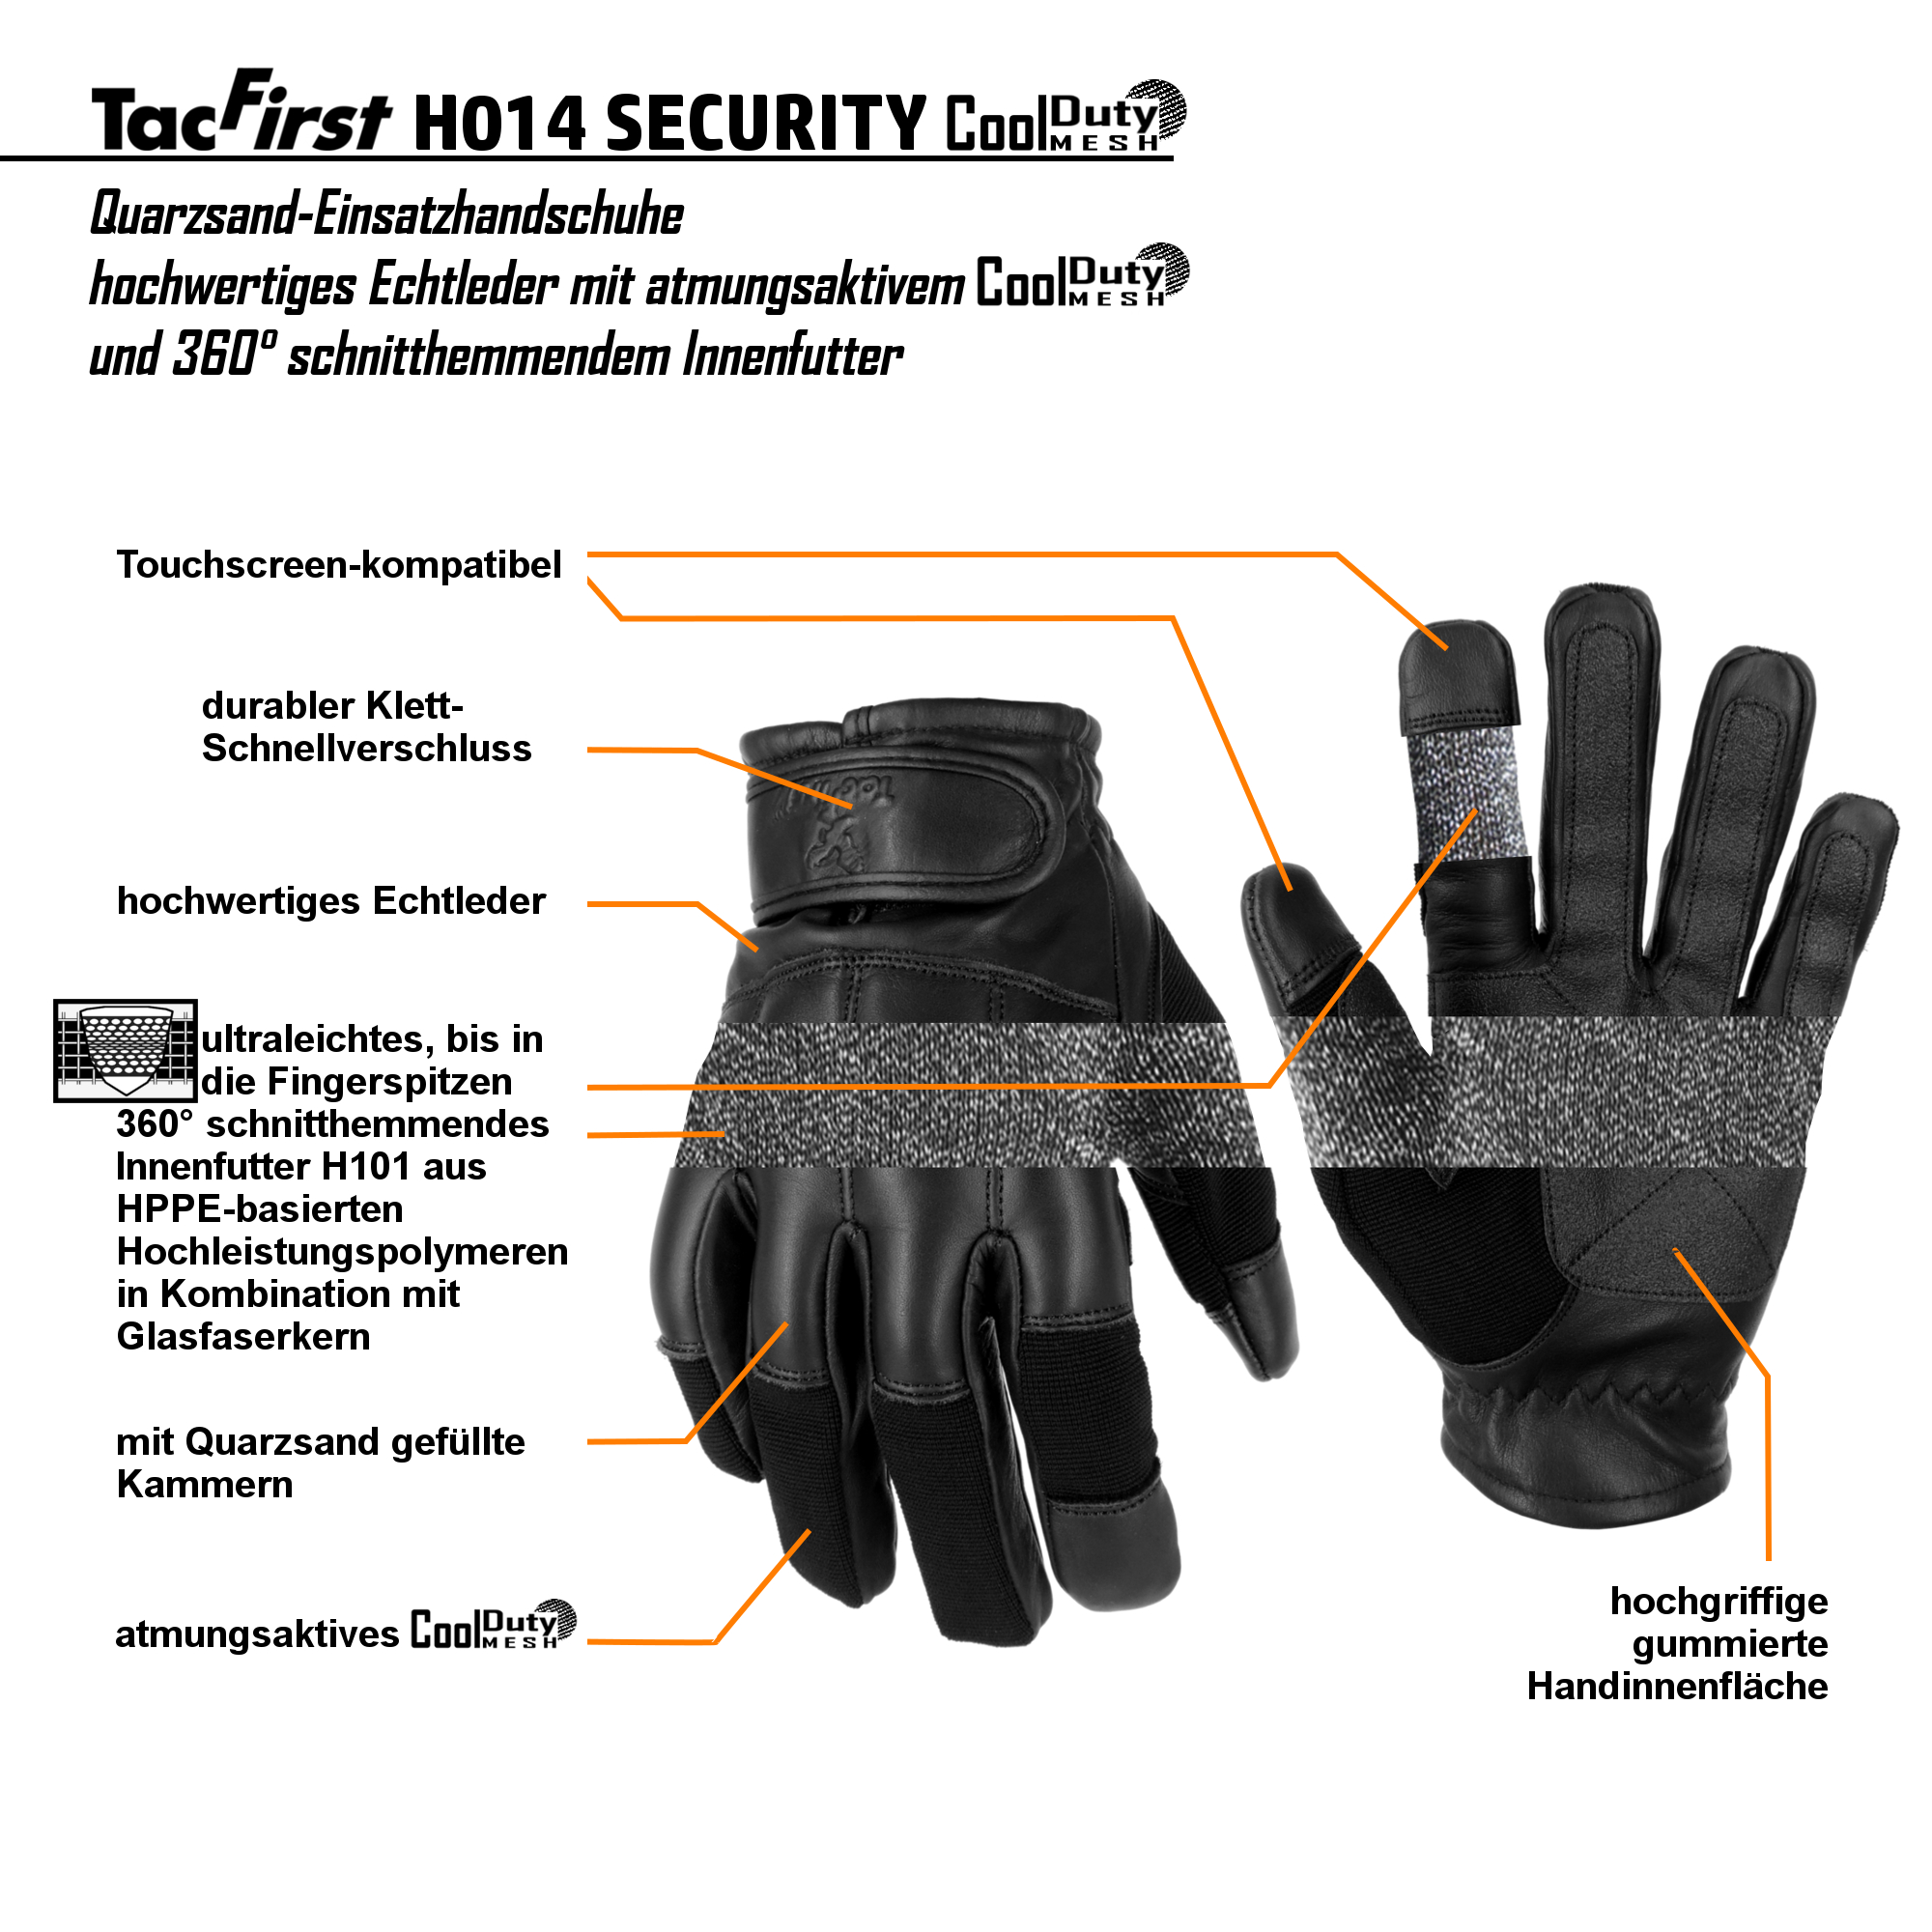 TacFirst® Einsatzhandschuhe H014 Quarzsand CoolDuty atmungsaktiv, 360° schnitthemmend